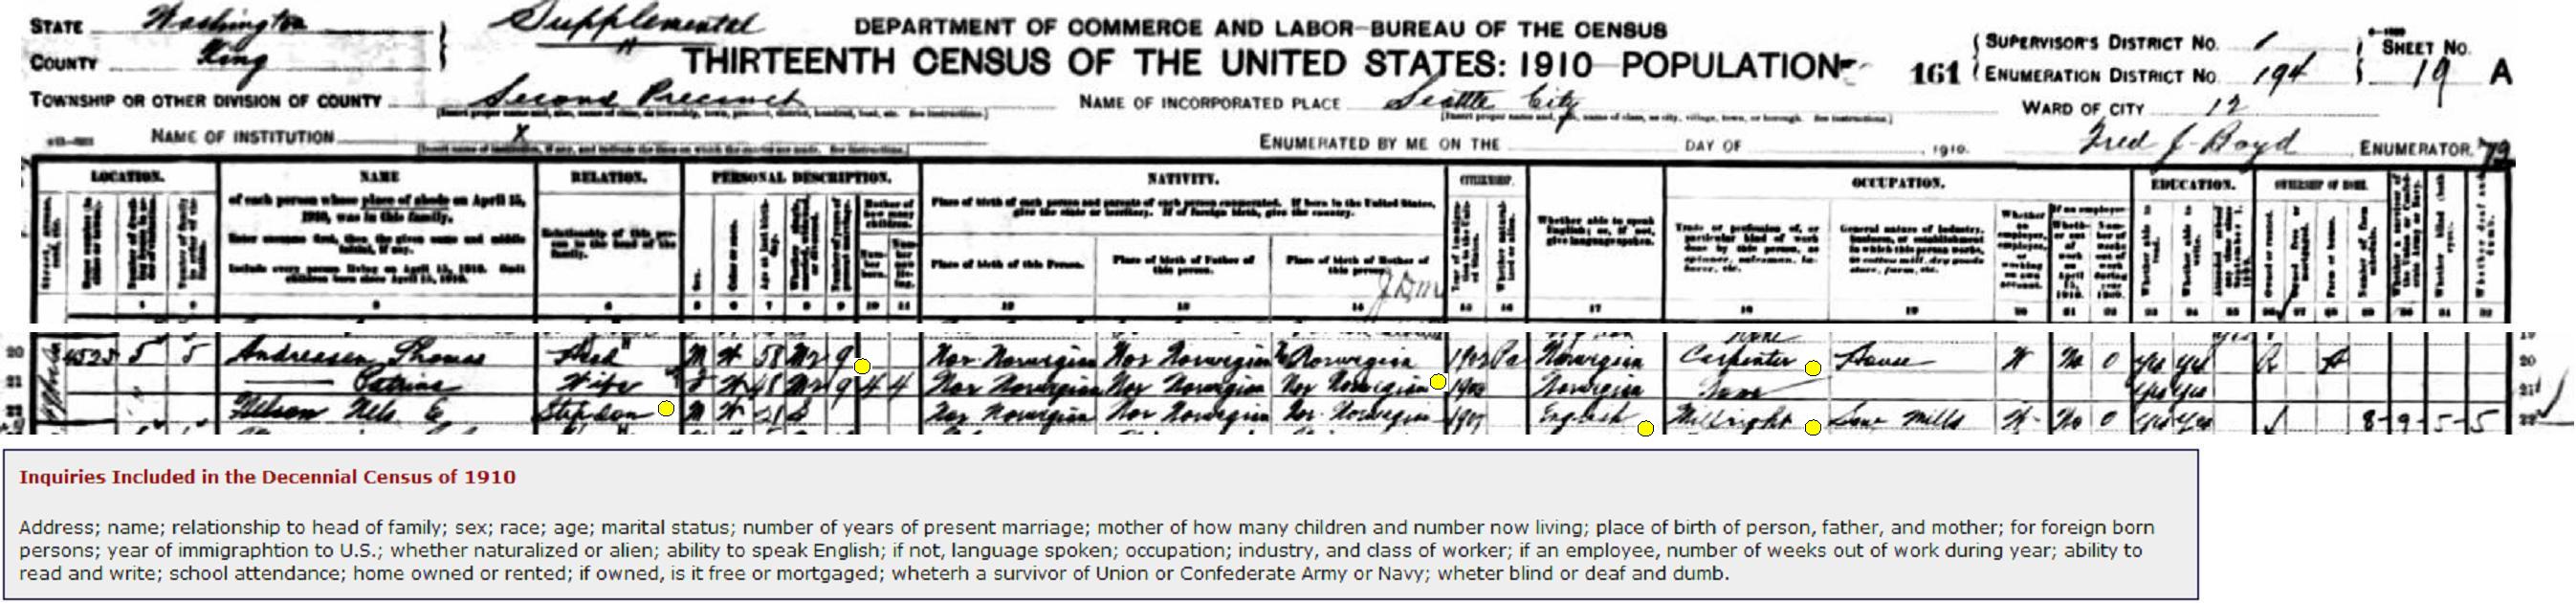 Census_1910